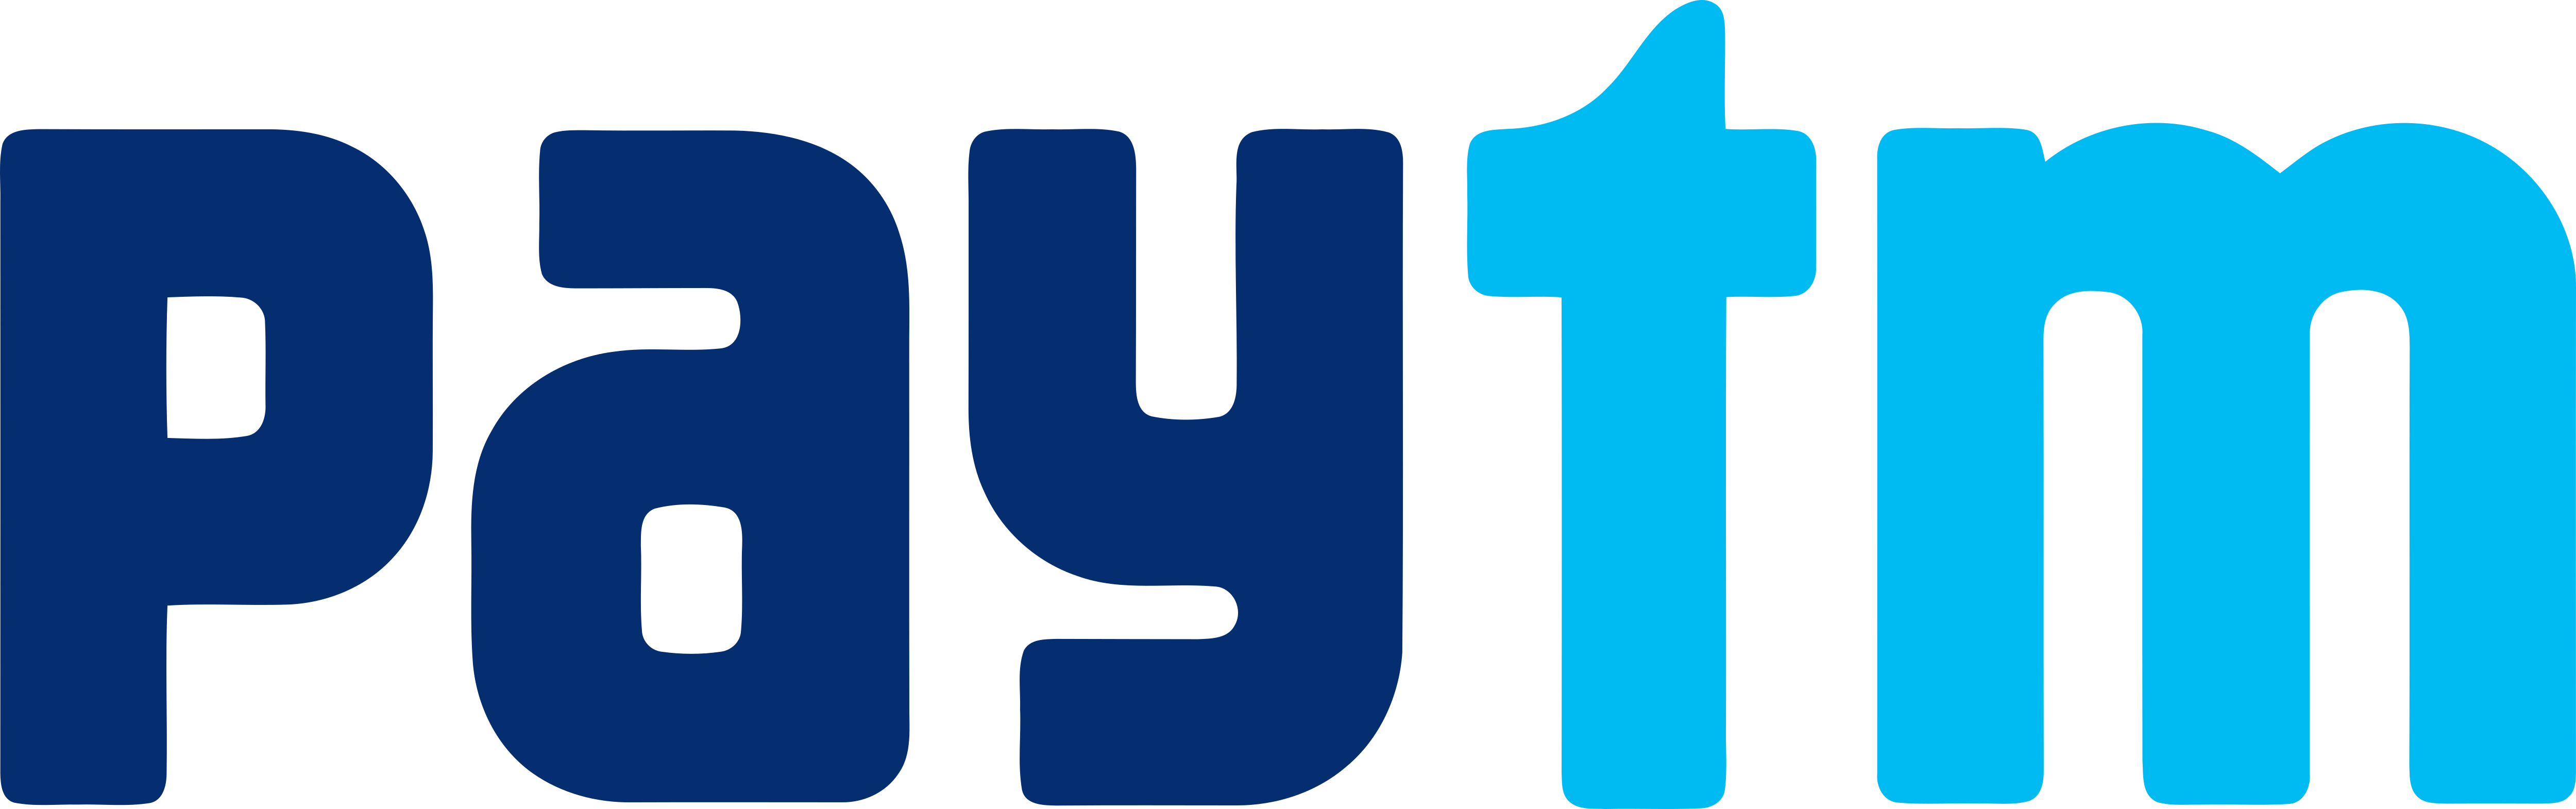 Paytm – Logos Download